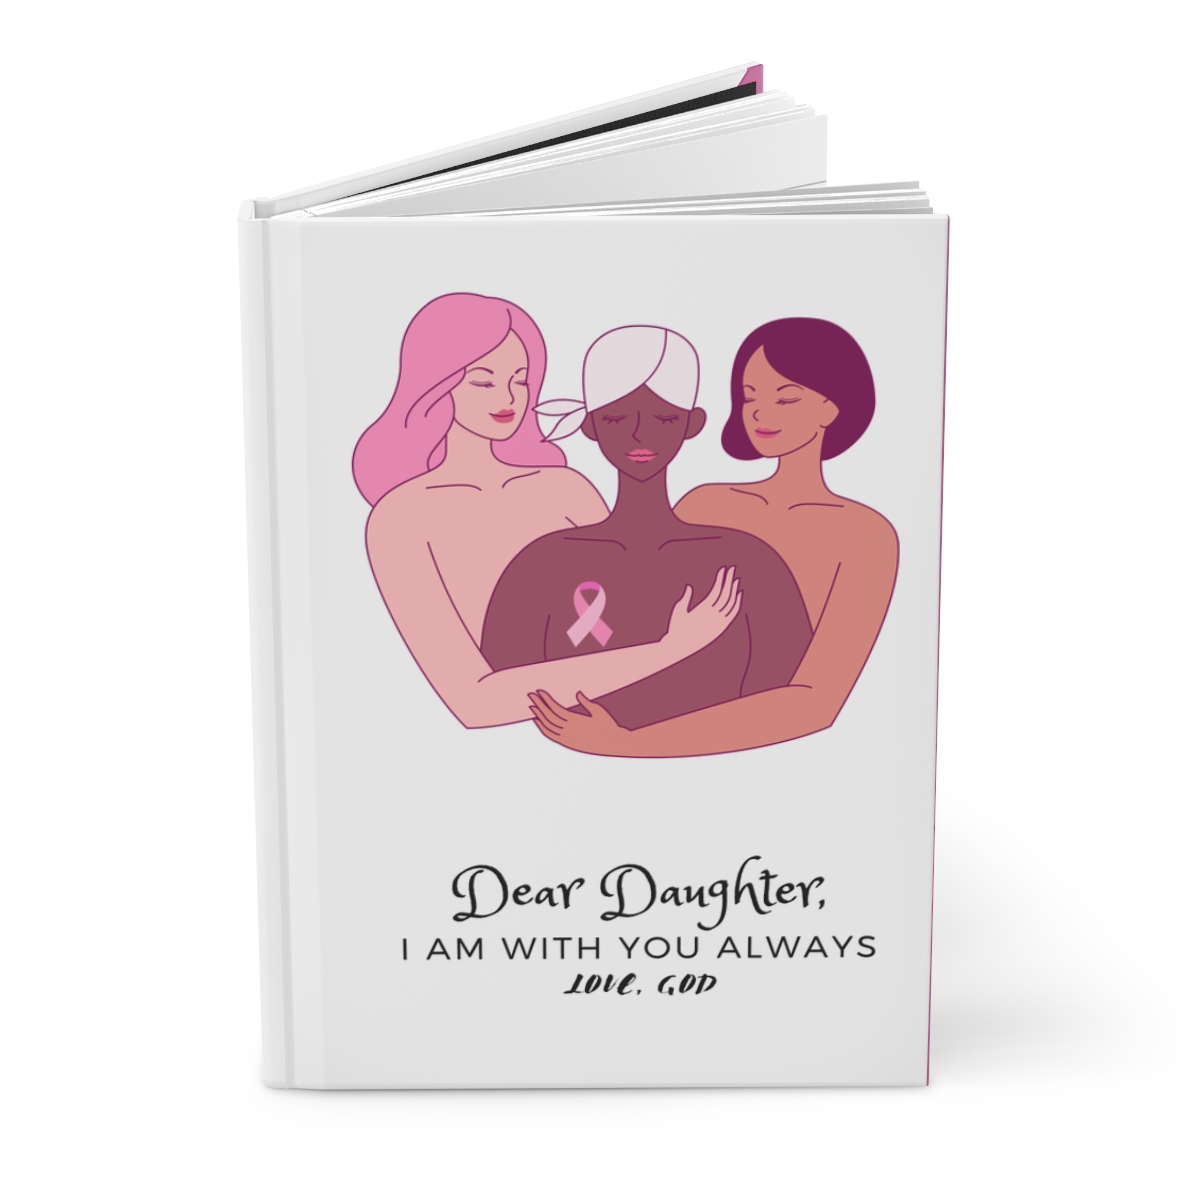 Dear Daughter Hardcover Journal